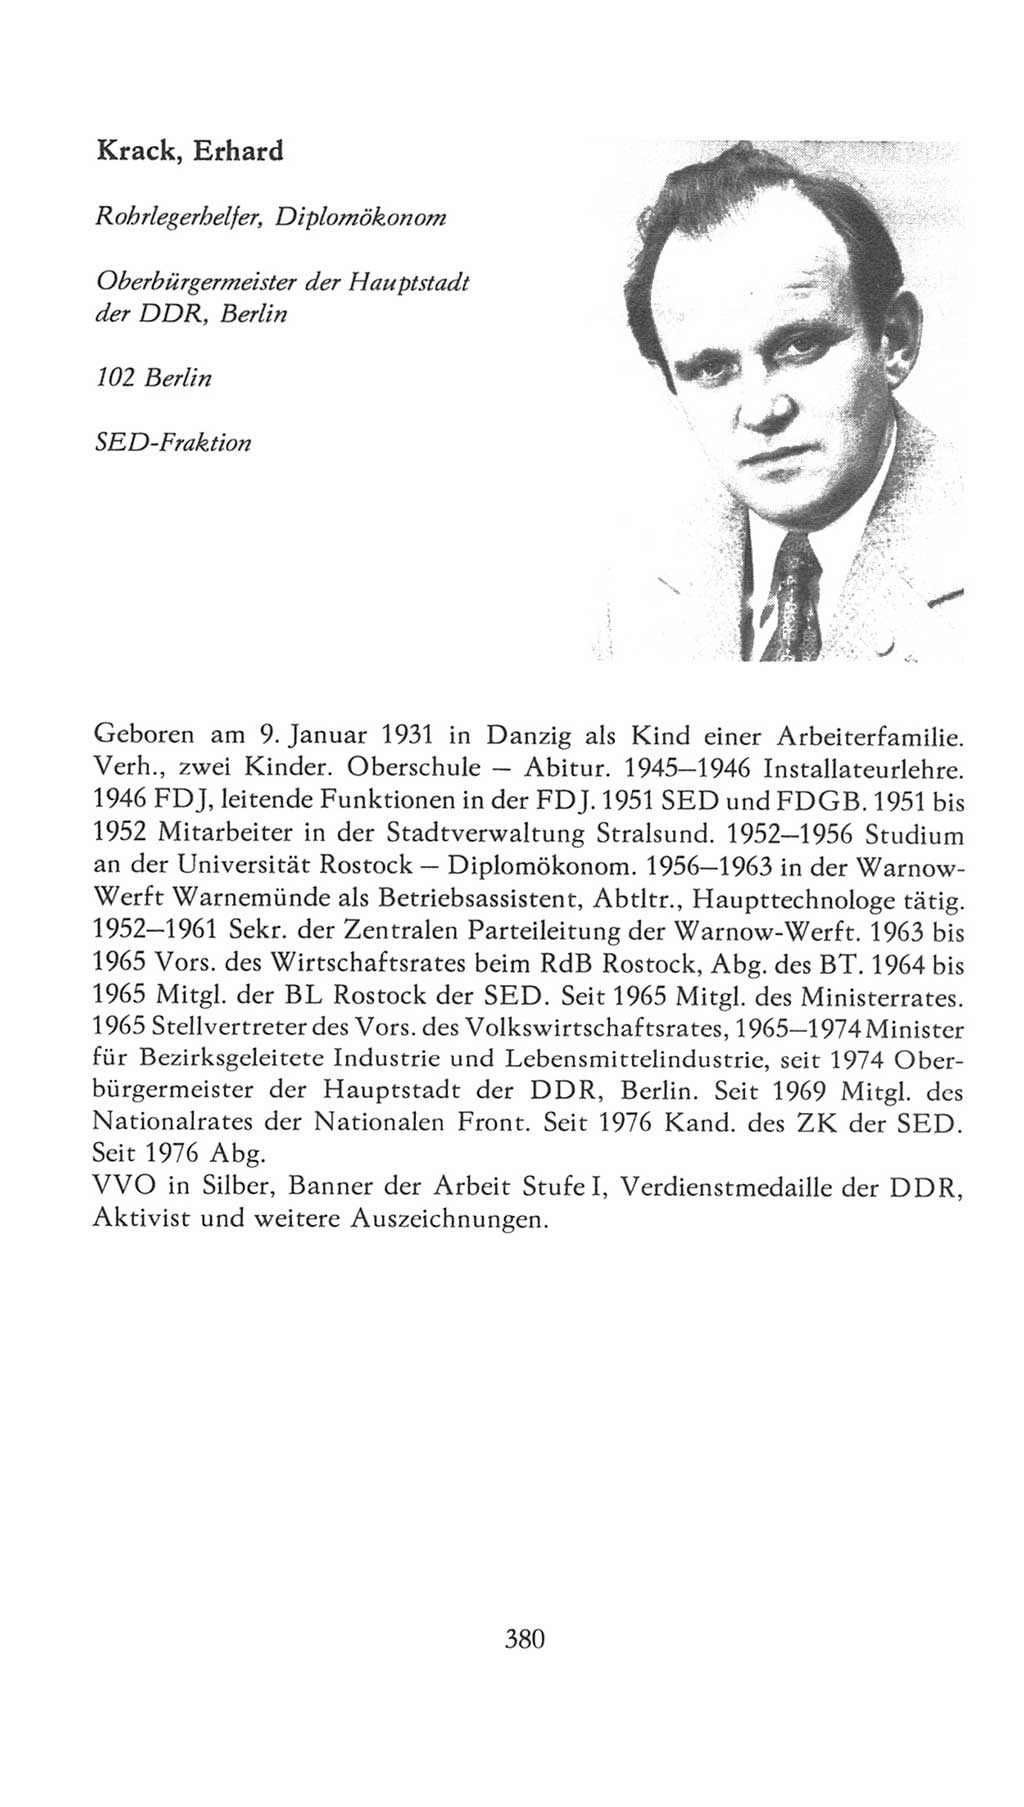 Volkskammer (VK) der Deutschen Demokratischen Republik (DDR), 7. Wahlperiode 1976-1981, Seite 380 (VK. DDR 7. WP. 1976-1981, S. 380)